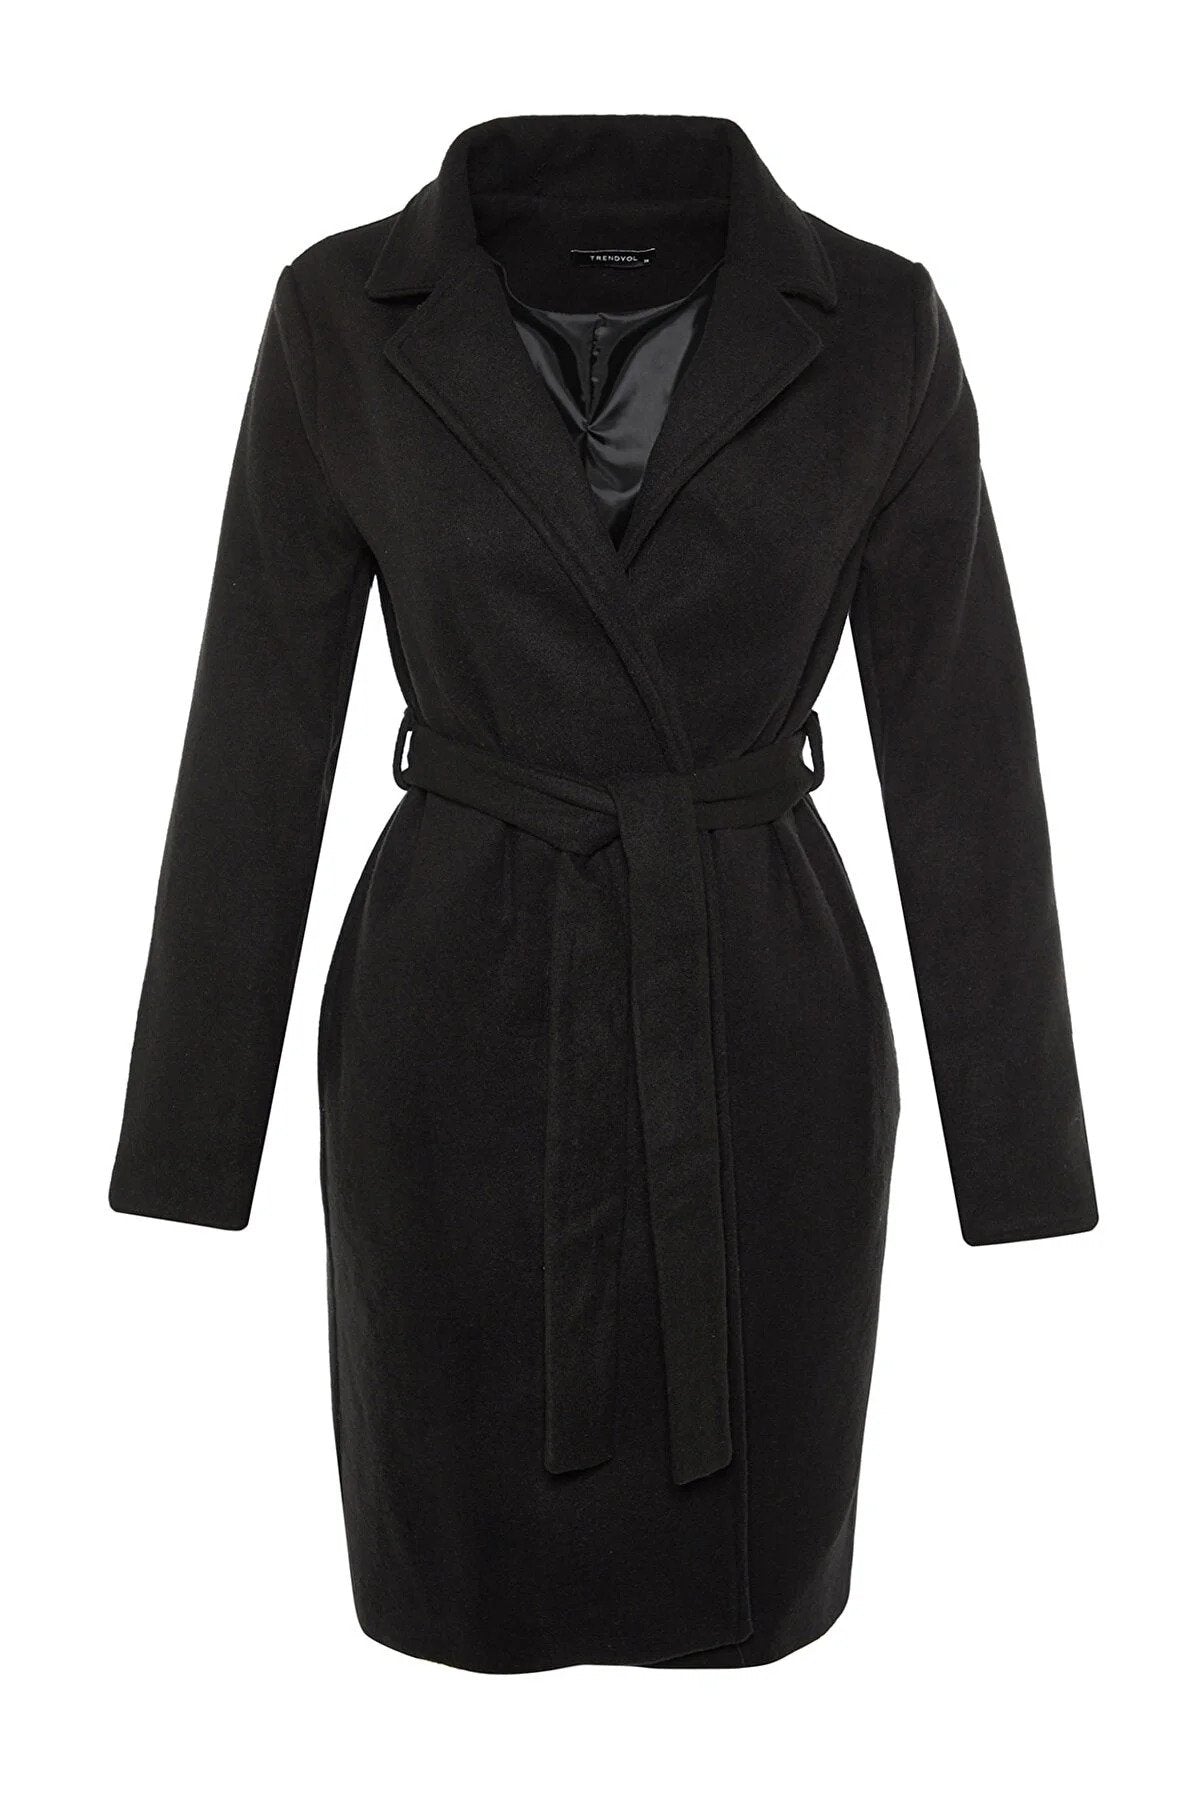 Trendyol Long Basic Black Coat